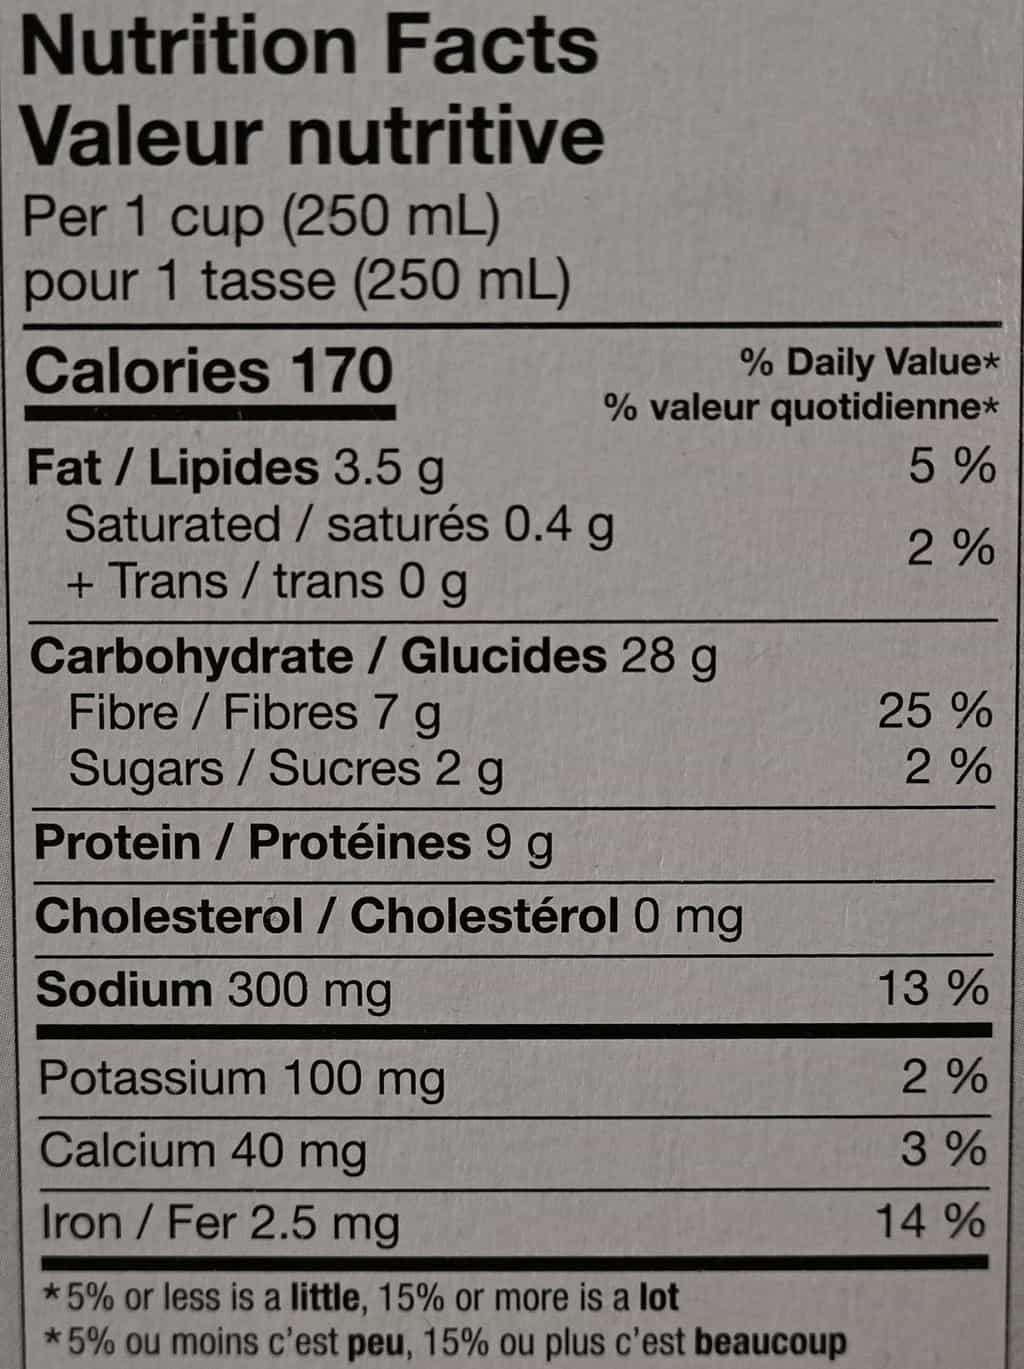 Costco lentil soup nutrition facts label. 